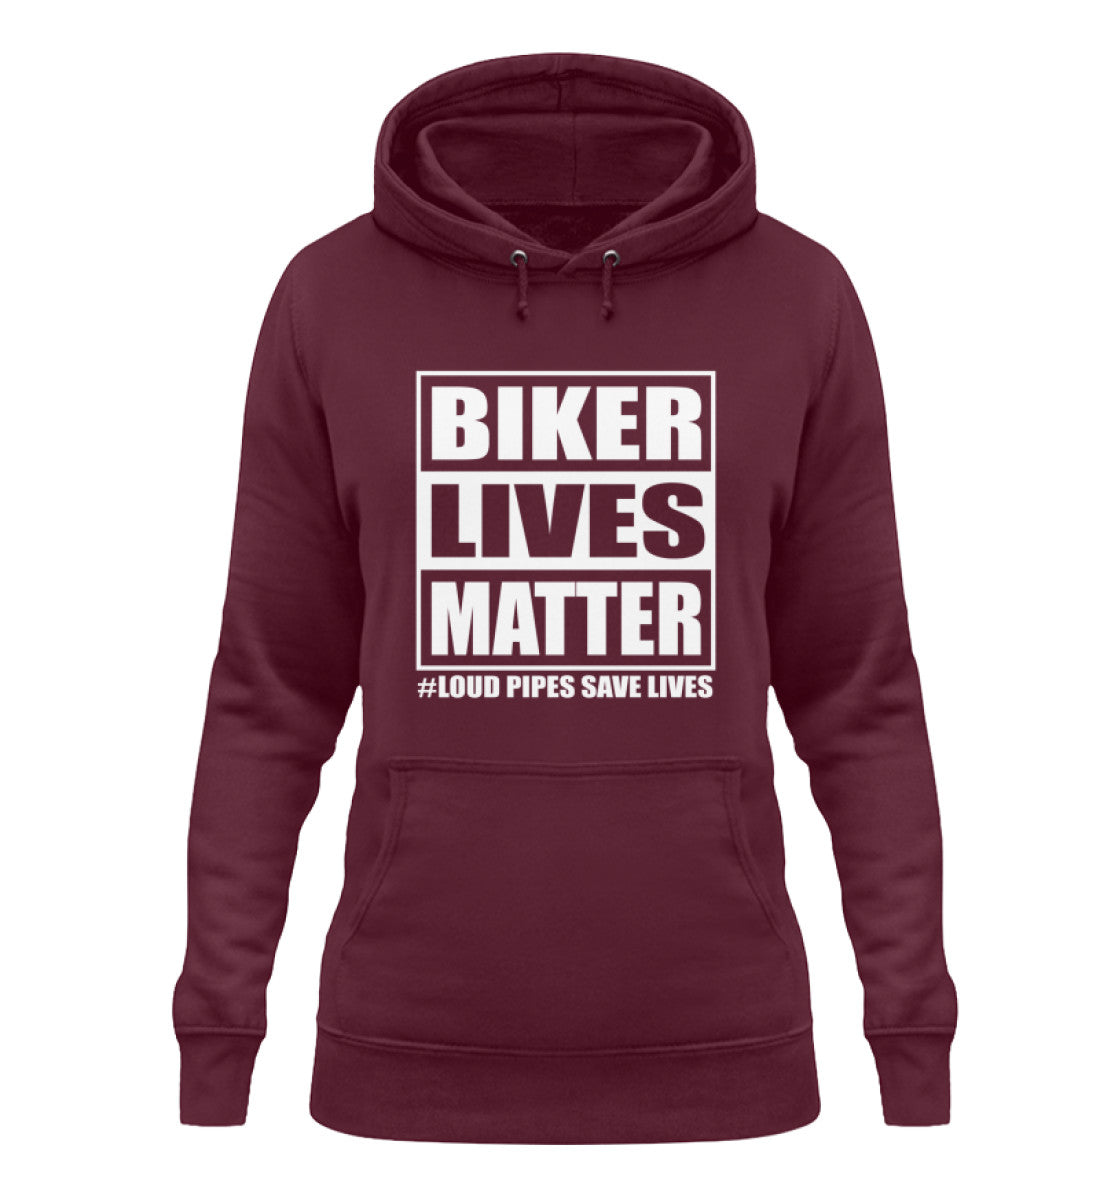 Ein Damen Hoodie für Motorradfahrerinnen von Wingbikers mit dem Aufdruck, Biker Lives Matter - # Loud Pipes Save Lives, in burgunger weinrot.